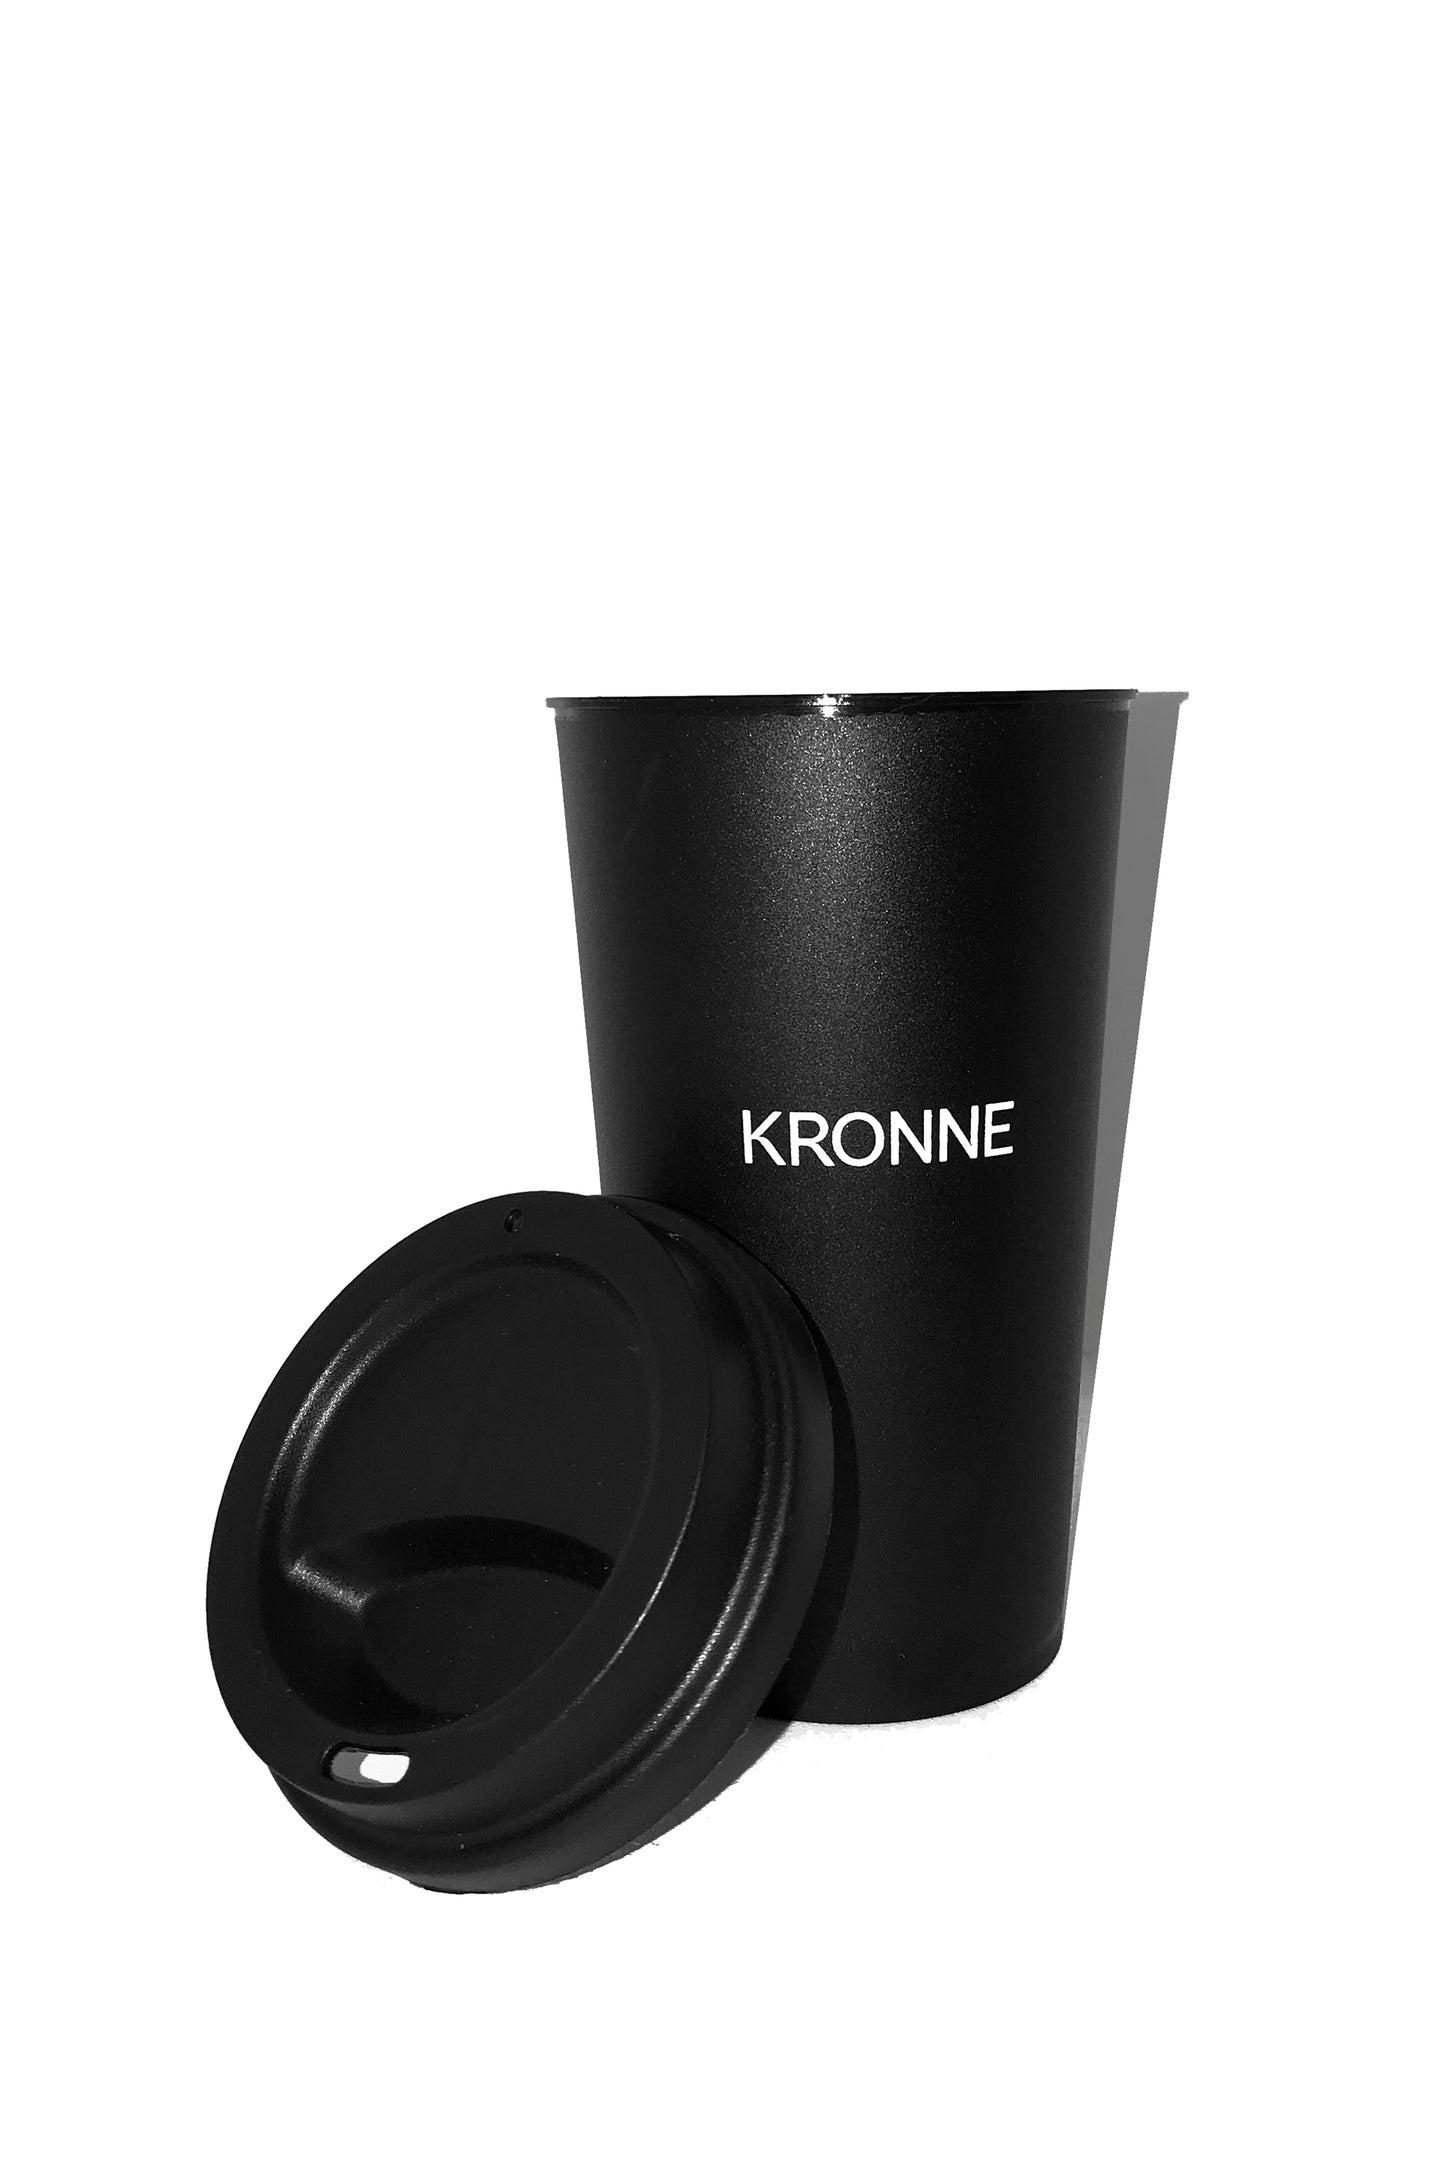 Copo café Kronne